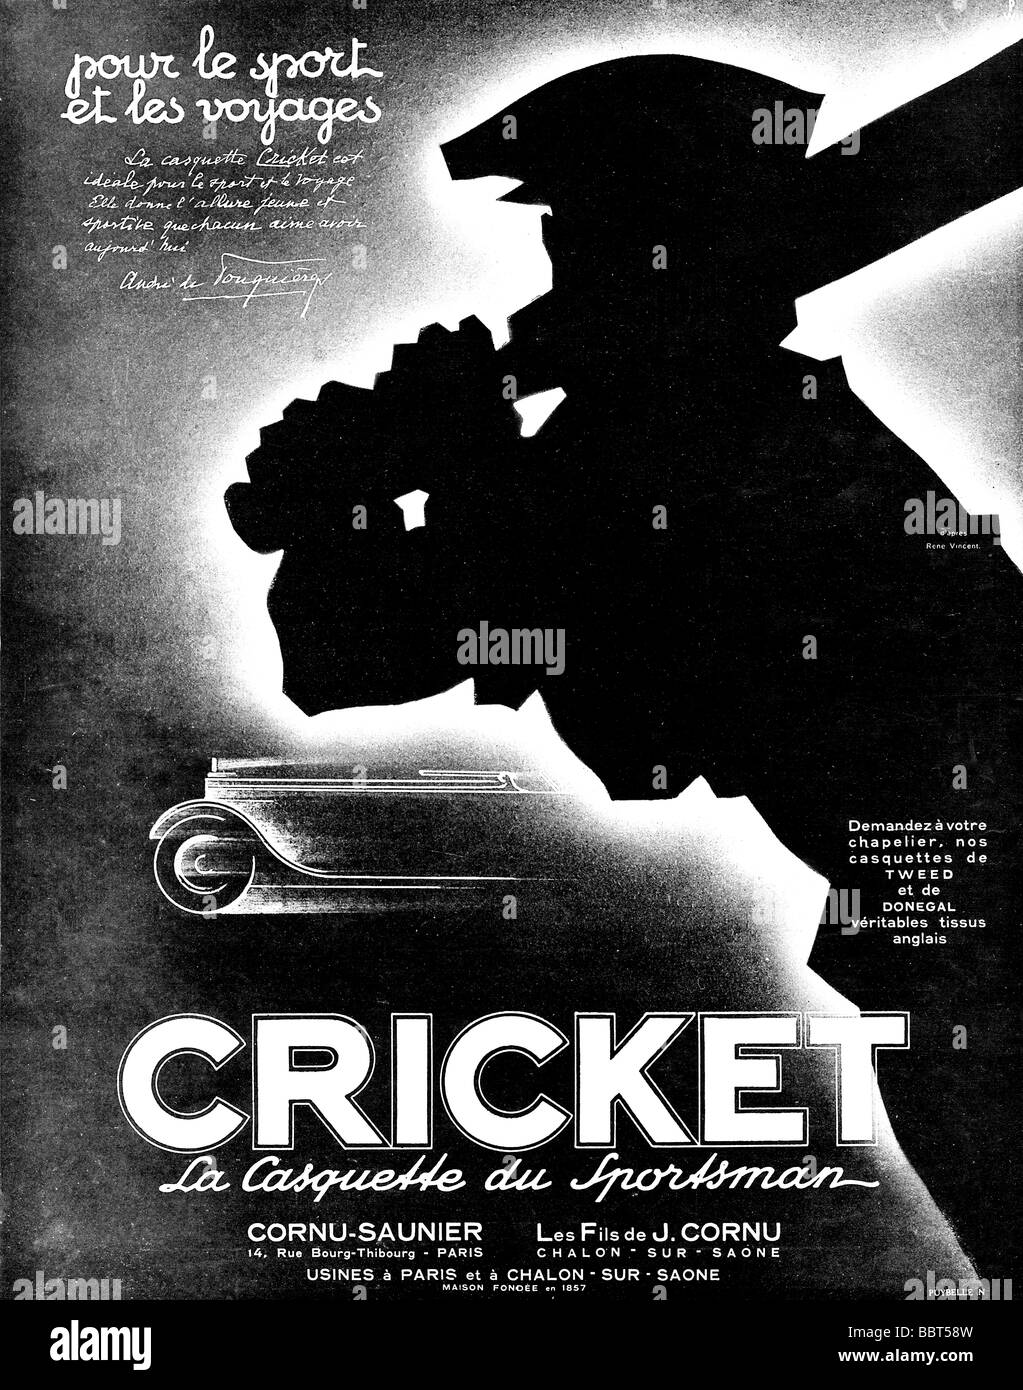 Cricket cappucci francese 1920s annuncio pubblicitario per la casquette du sportivo copricapo per lo sport e i viaggi in stile inglese Foto Stock